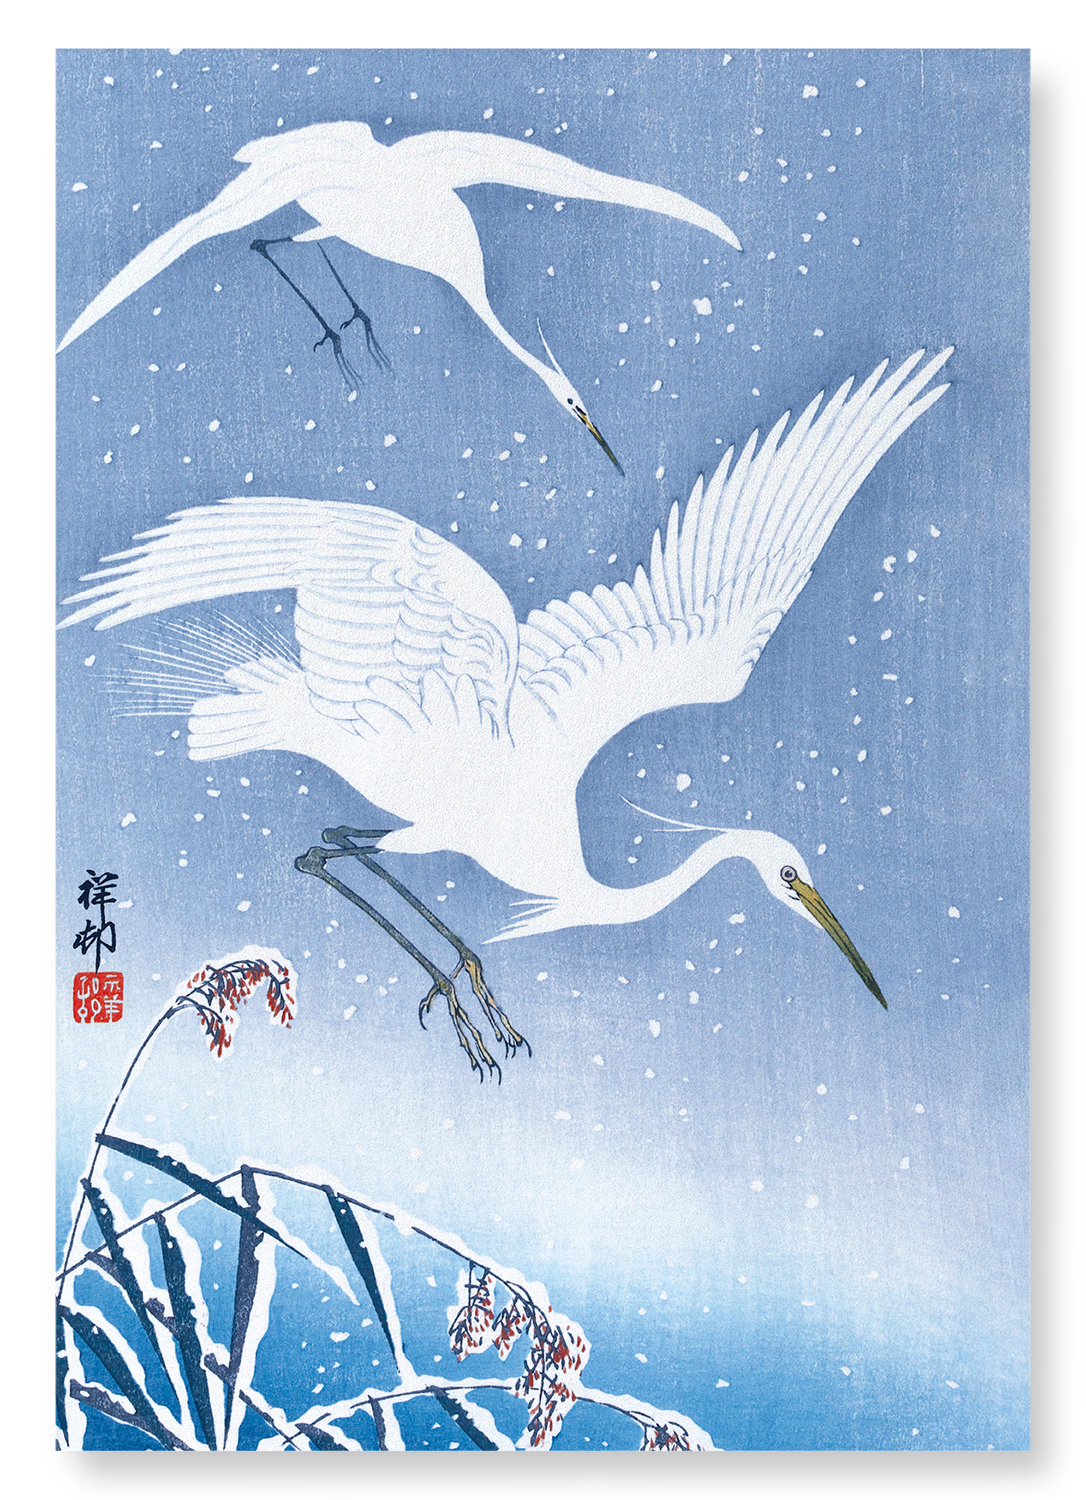 EGRETS DESCENDING IN SNOW: Japanese Art Print